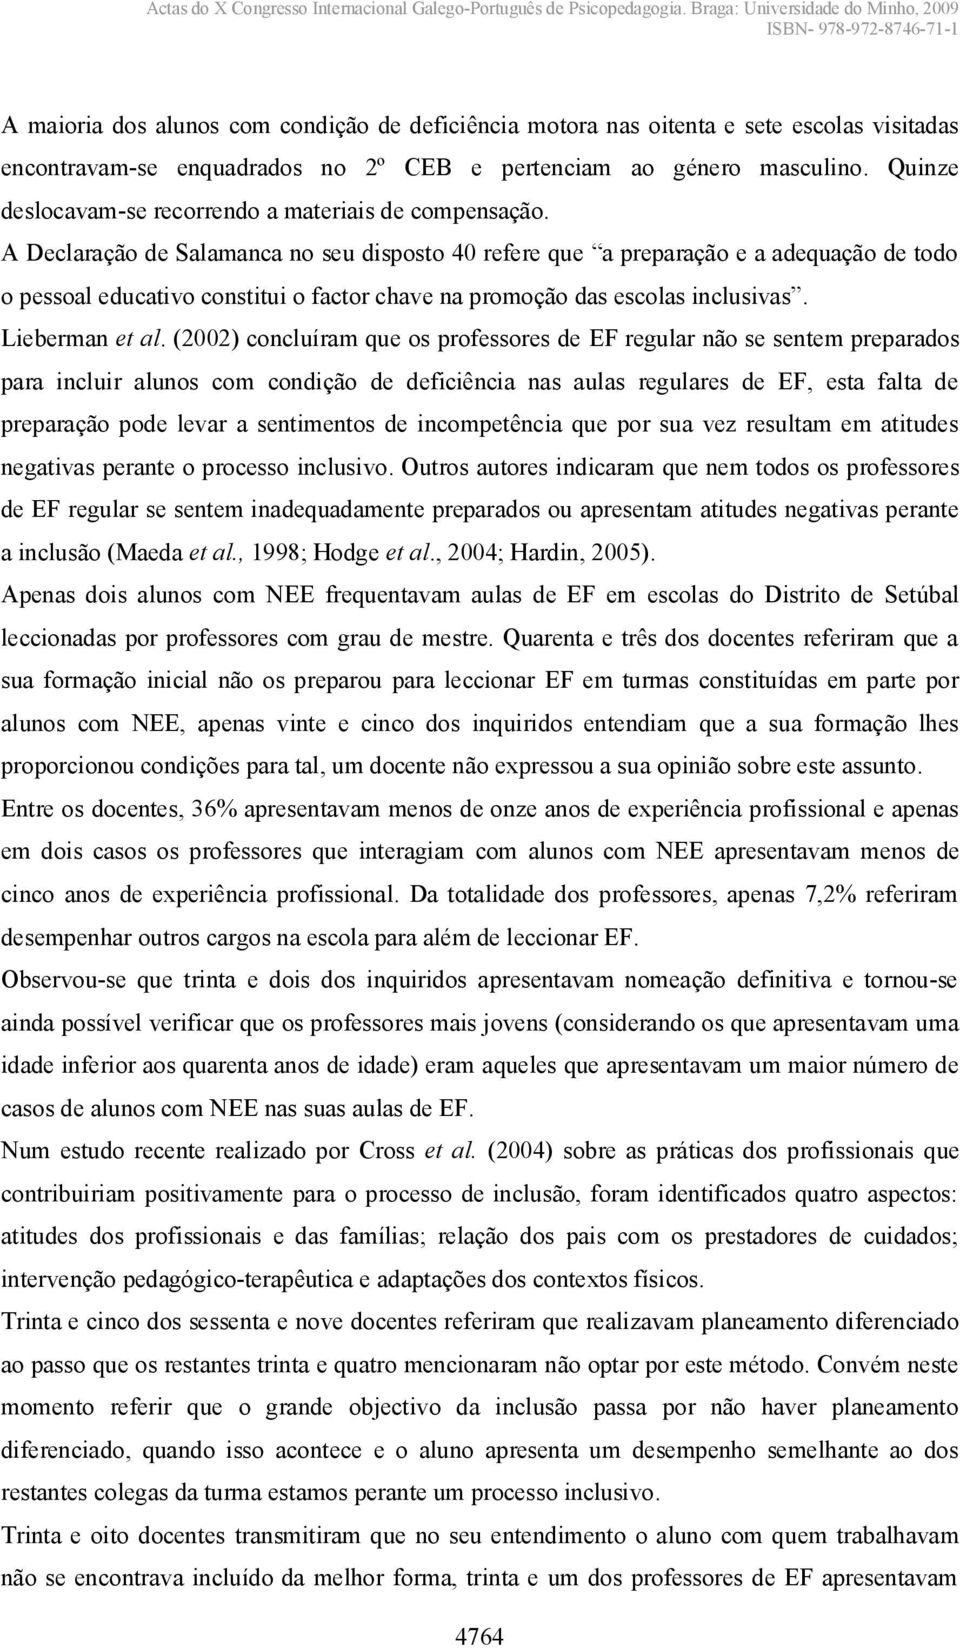 A Declaração de Salamanca no seu disposto 40 refereque apreparaçãoeaadequaçãodetodo o pessoal educativo constitui o factor chavenapromoçãodasescolasinclusivas. Lieberman et al.